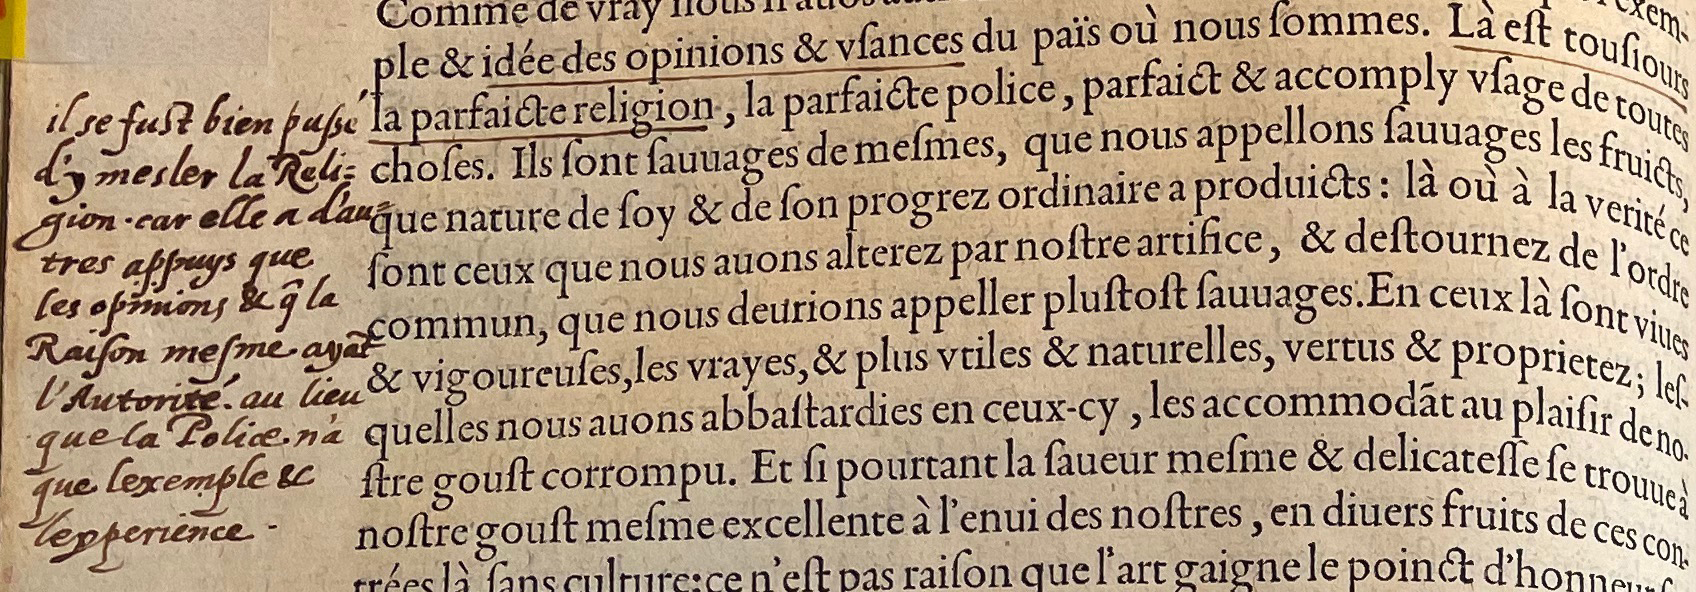 6.a. - p. 120, Livre I. Note de Laval. Les Essais, 1595. Exemplaire Laval.